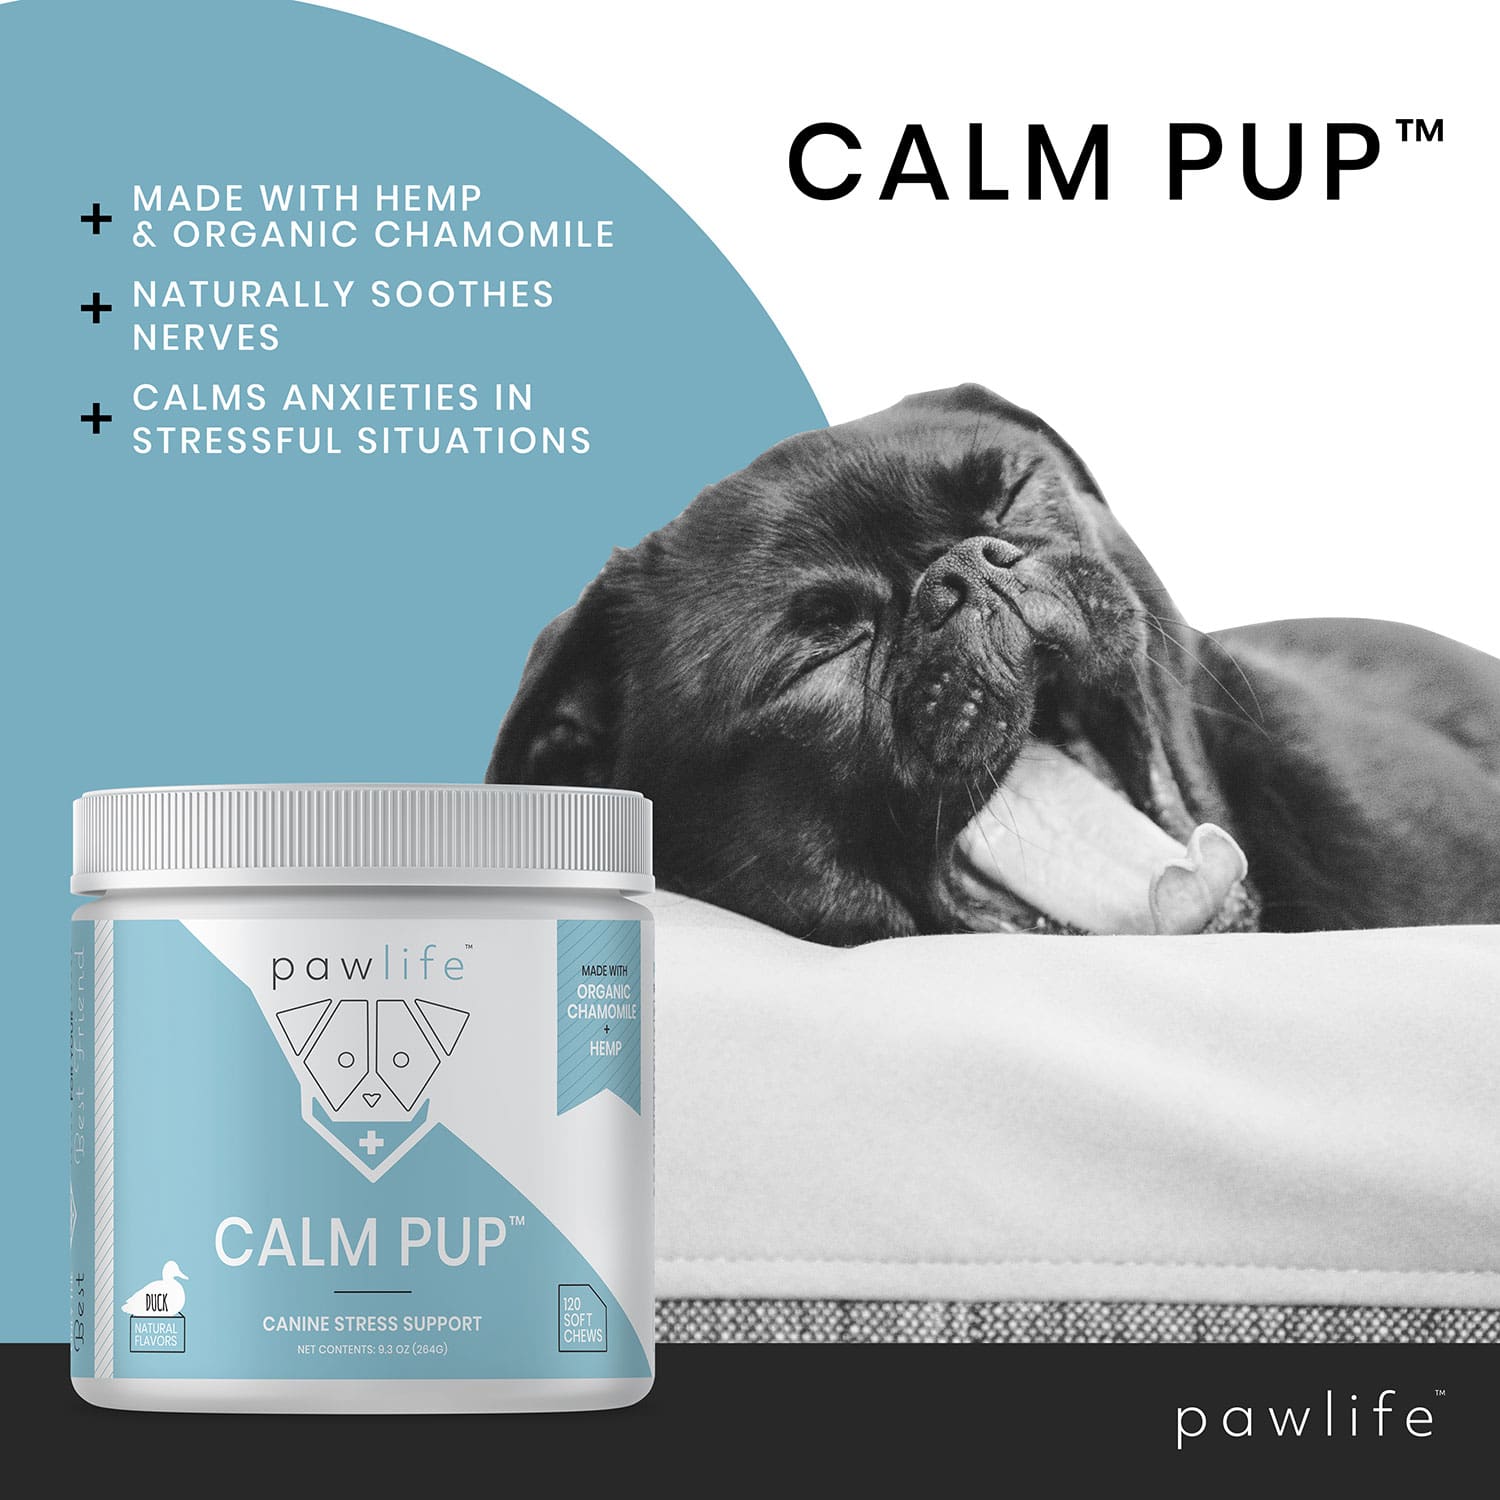 pawlife calm pup